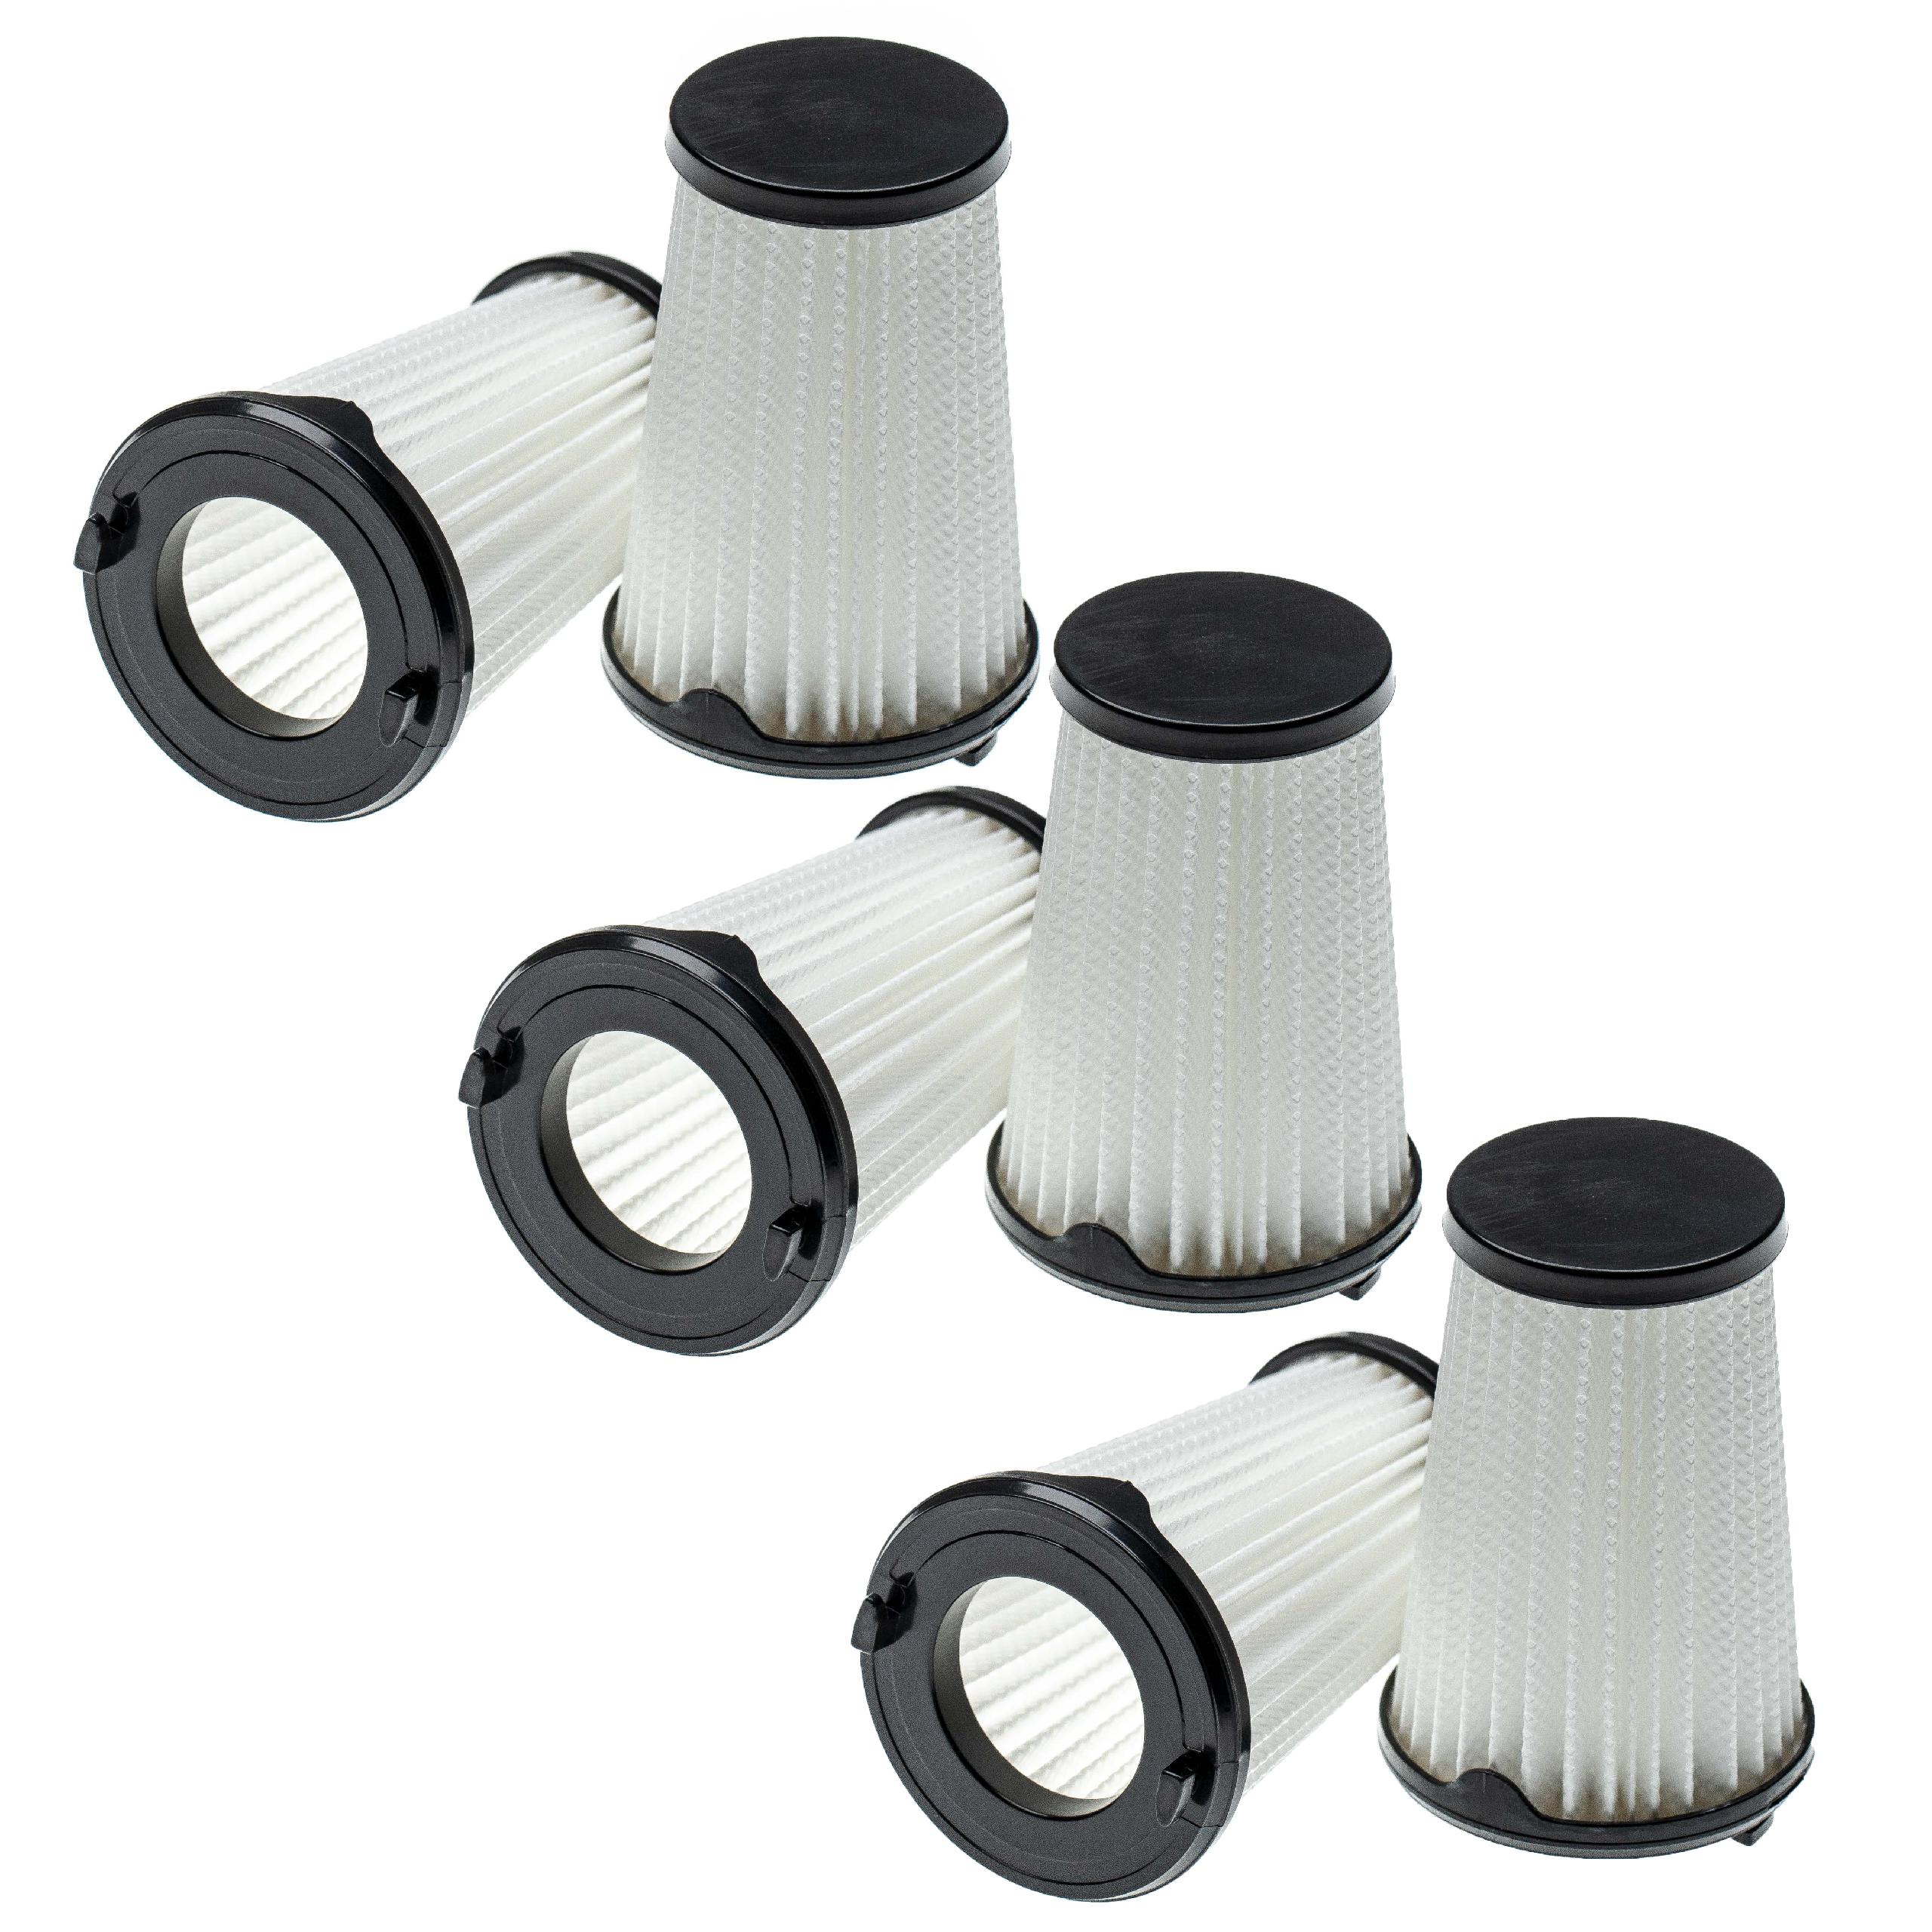 6x Filtre remplace AEG AEF150, 9001683755, 90094073100 pour aspirateur - filtre à lamelles